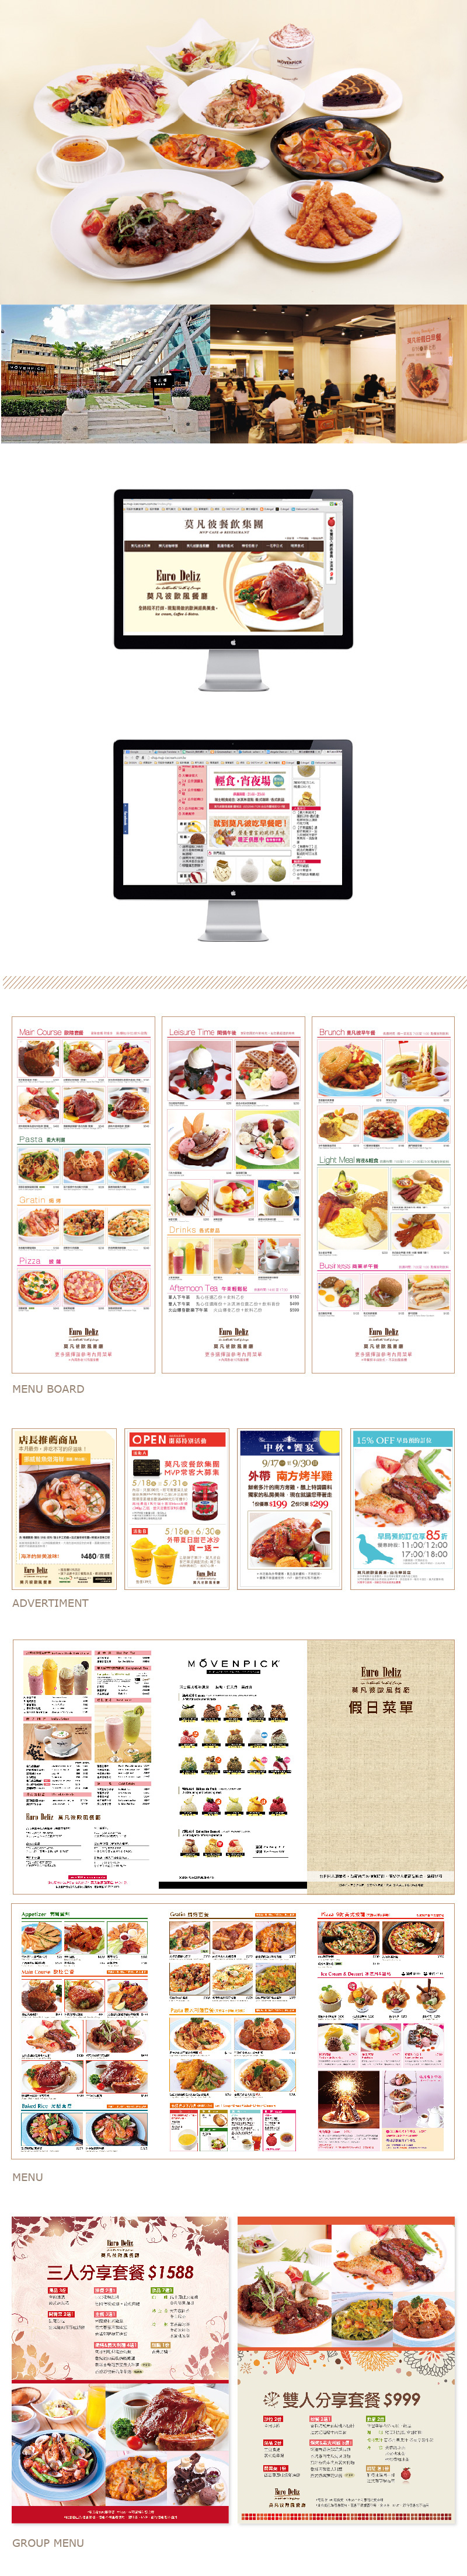 Layout restaurant Euro Deliz taiwan menu cuisine European branding 